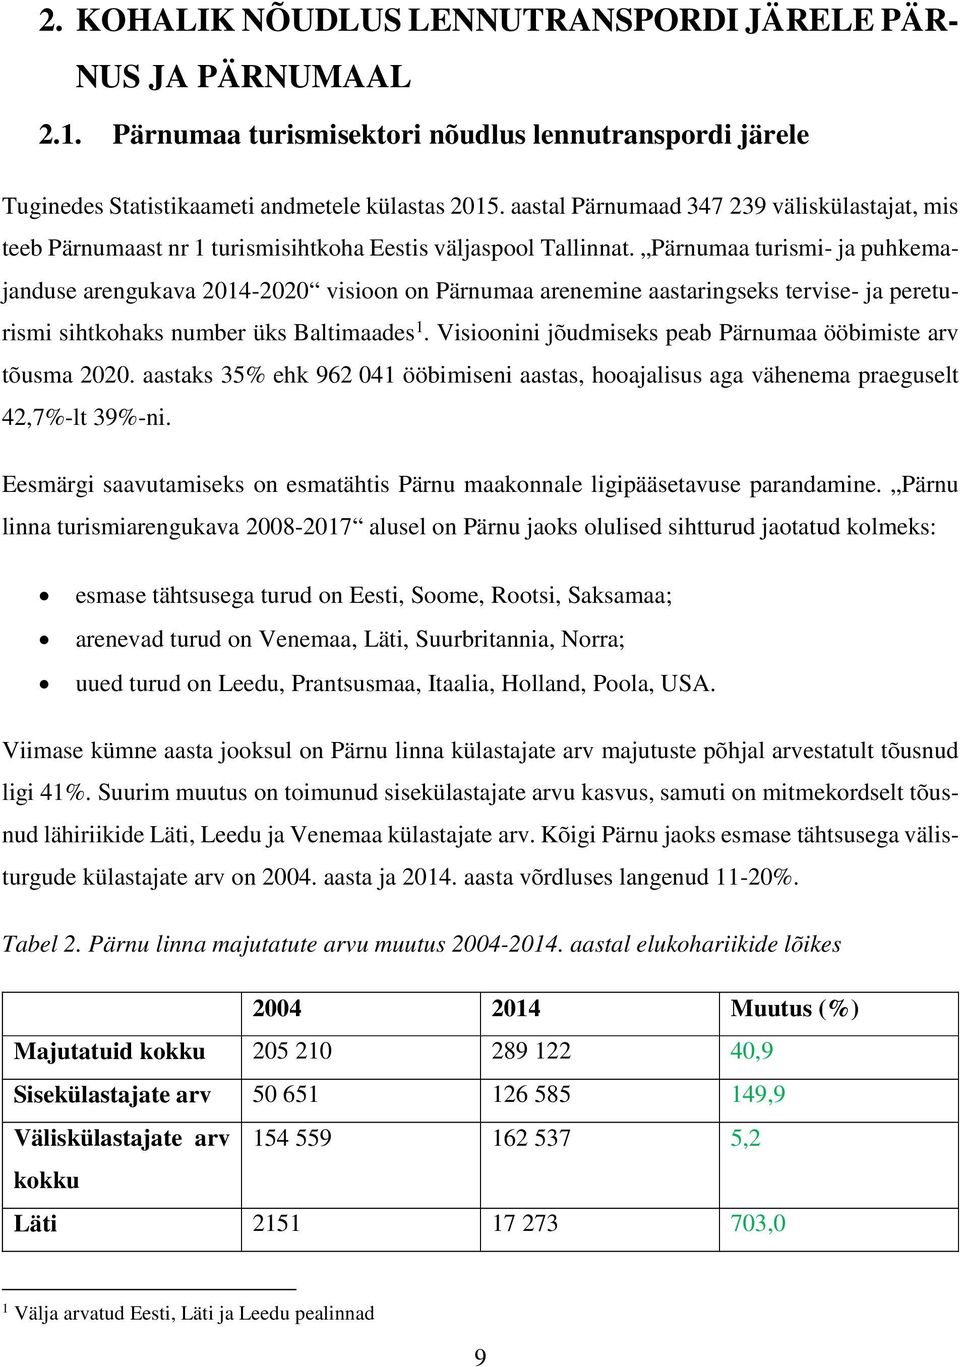 Pärnumaa turismi- ja puhkemajanduse arengukava 2014-2020 visioon on Pärnumaa arenemine aastaringseks tervise- ja pereturismi sihtkohaks number üks Baltimaades 1.